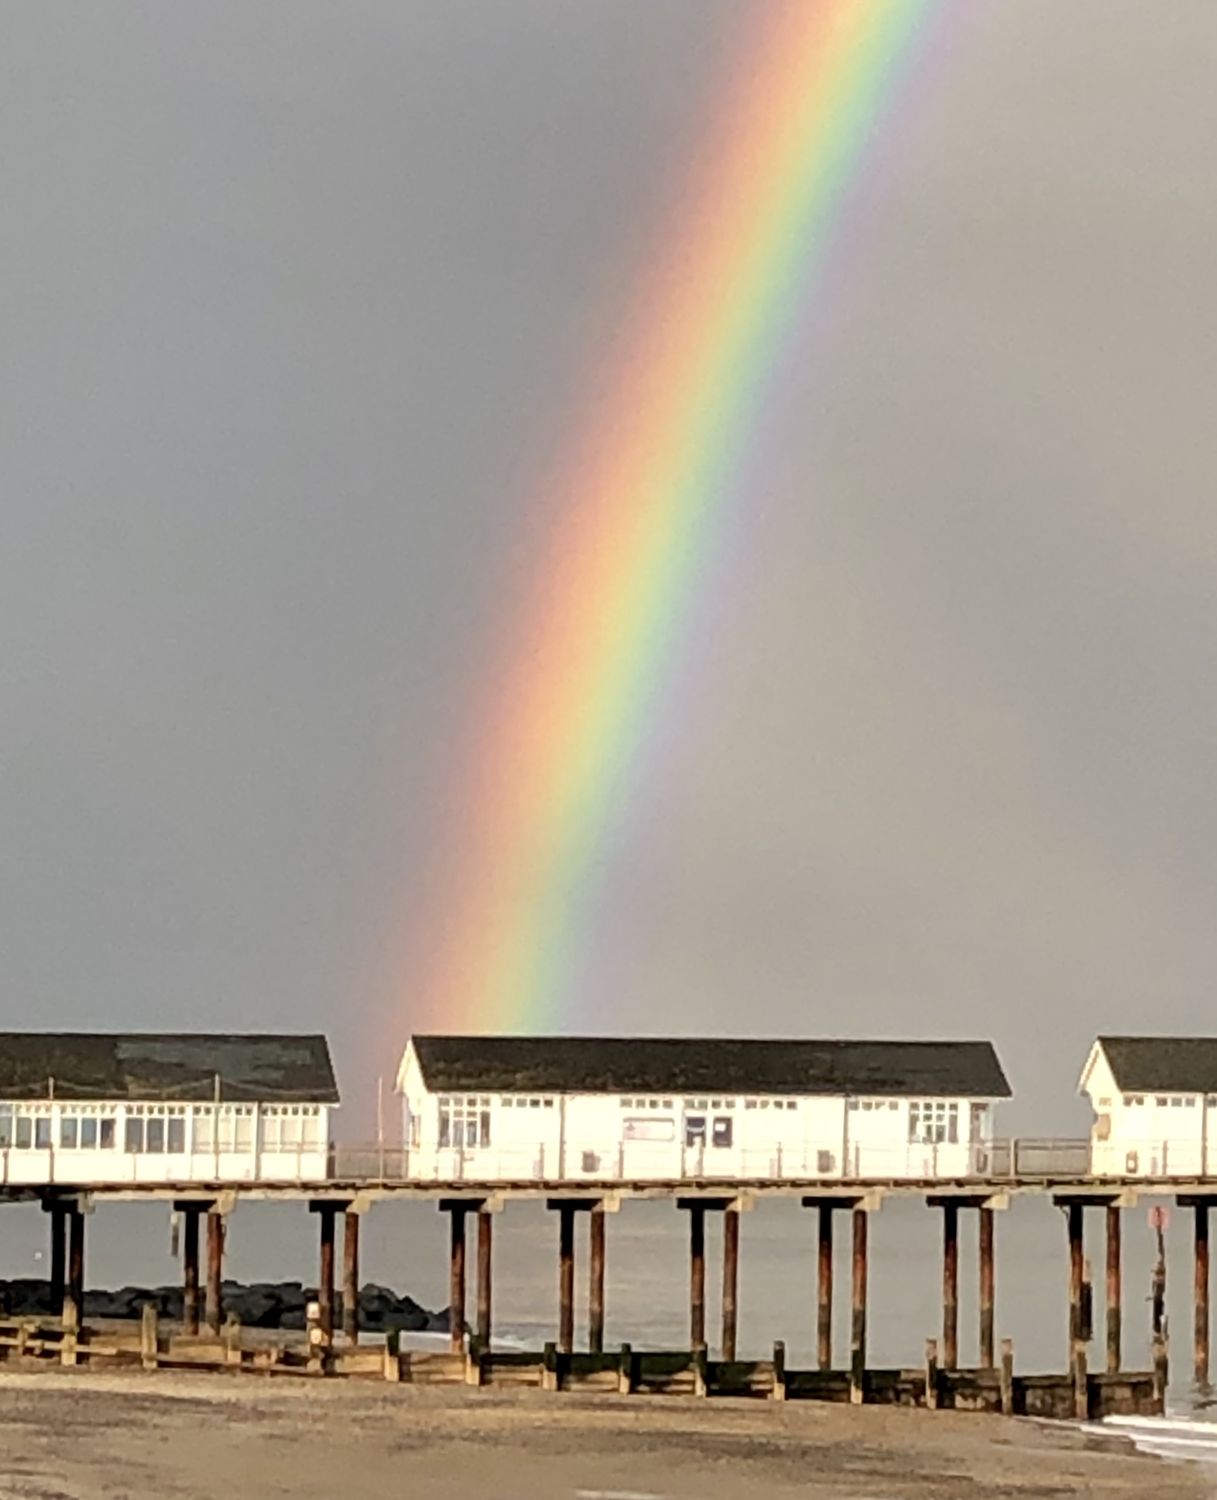 Stunning rainbow over the pier